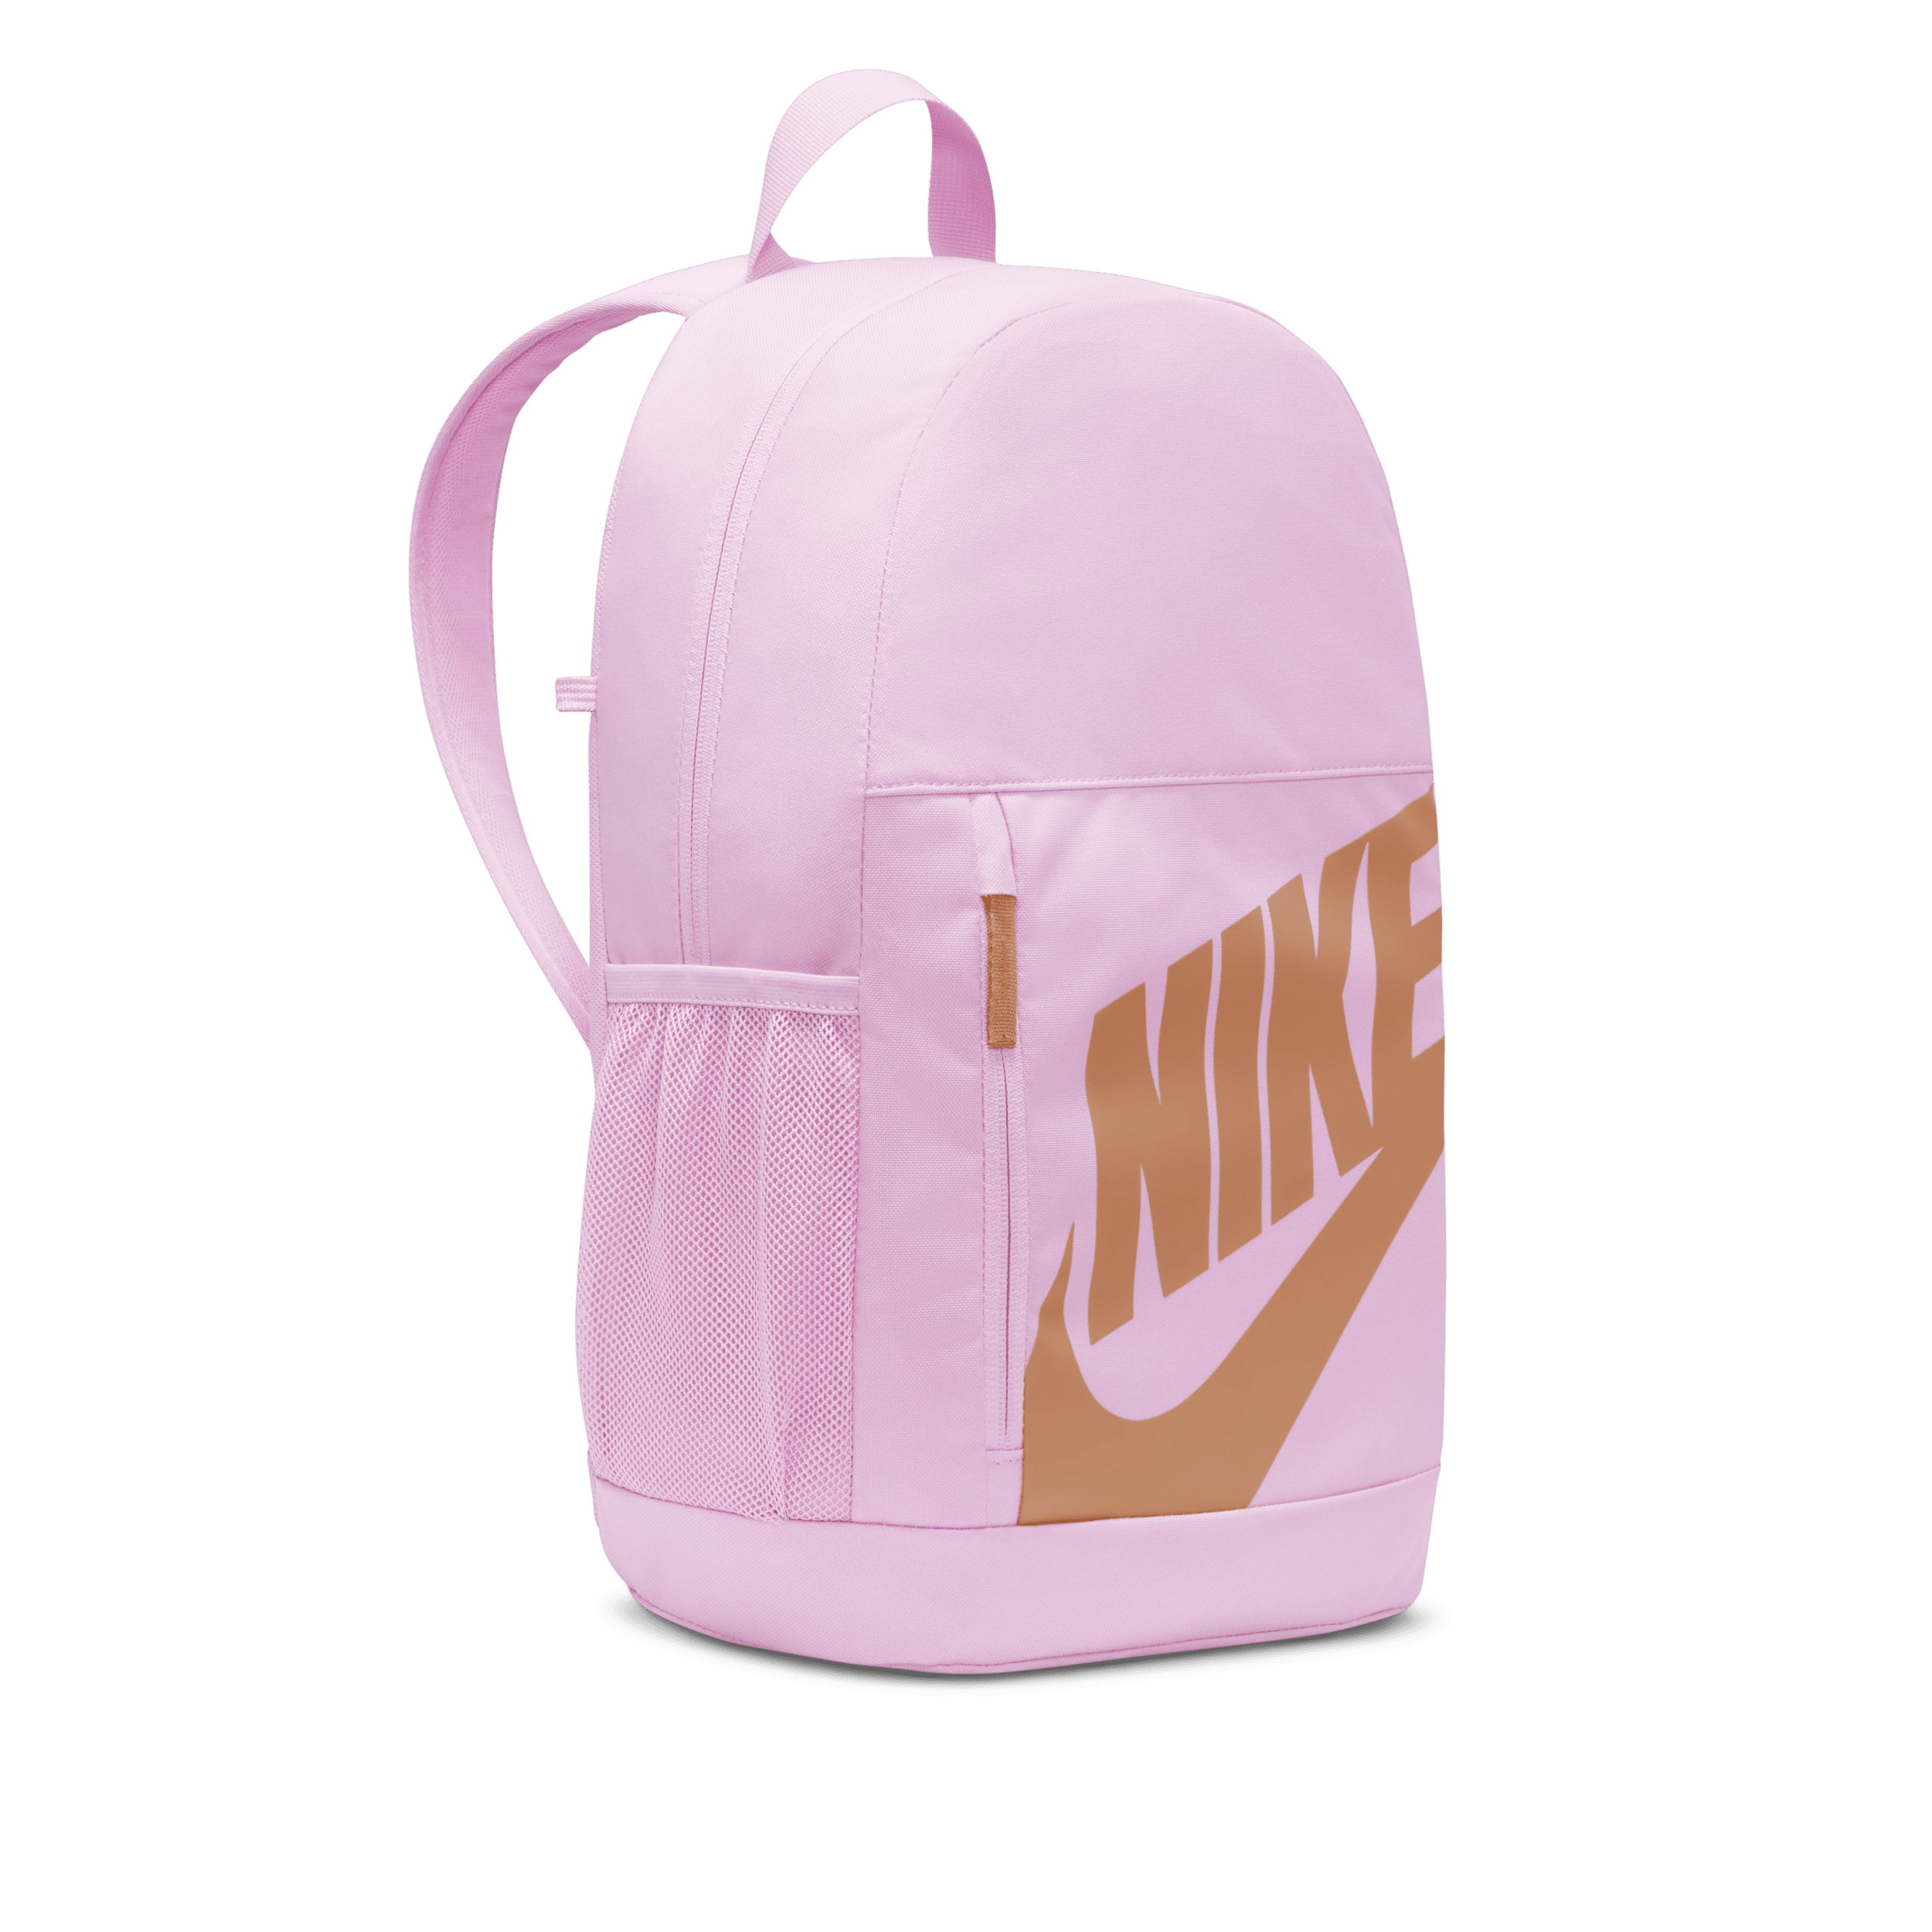 Nike Rugzak voor kids (20 liter) Roze